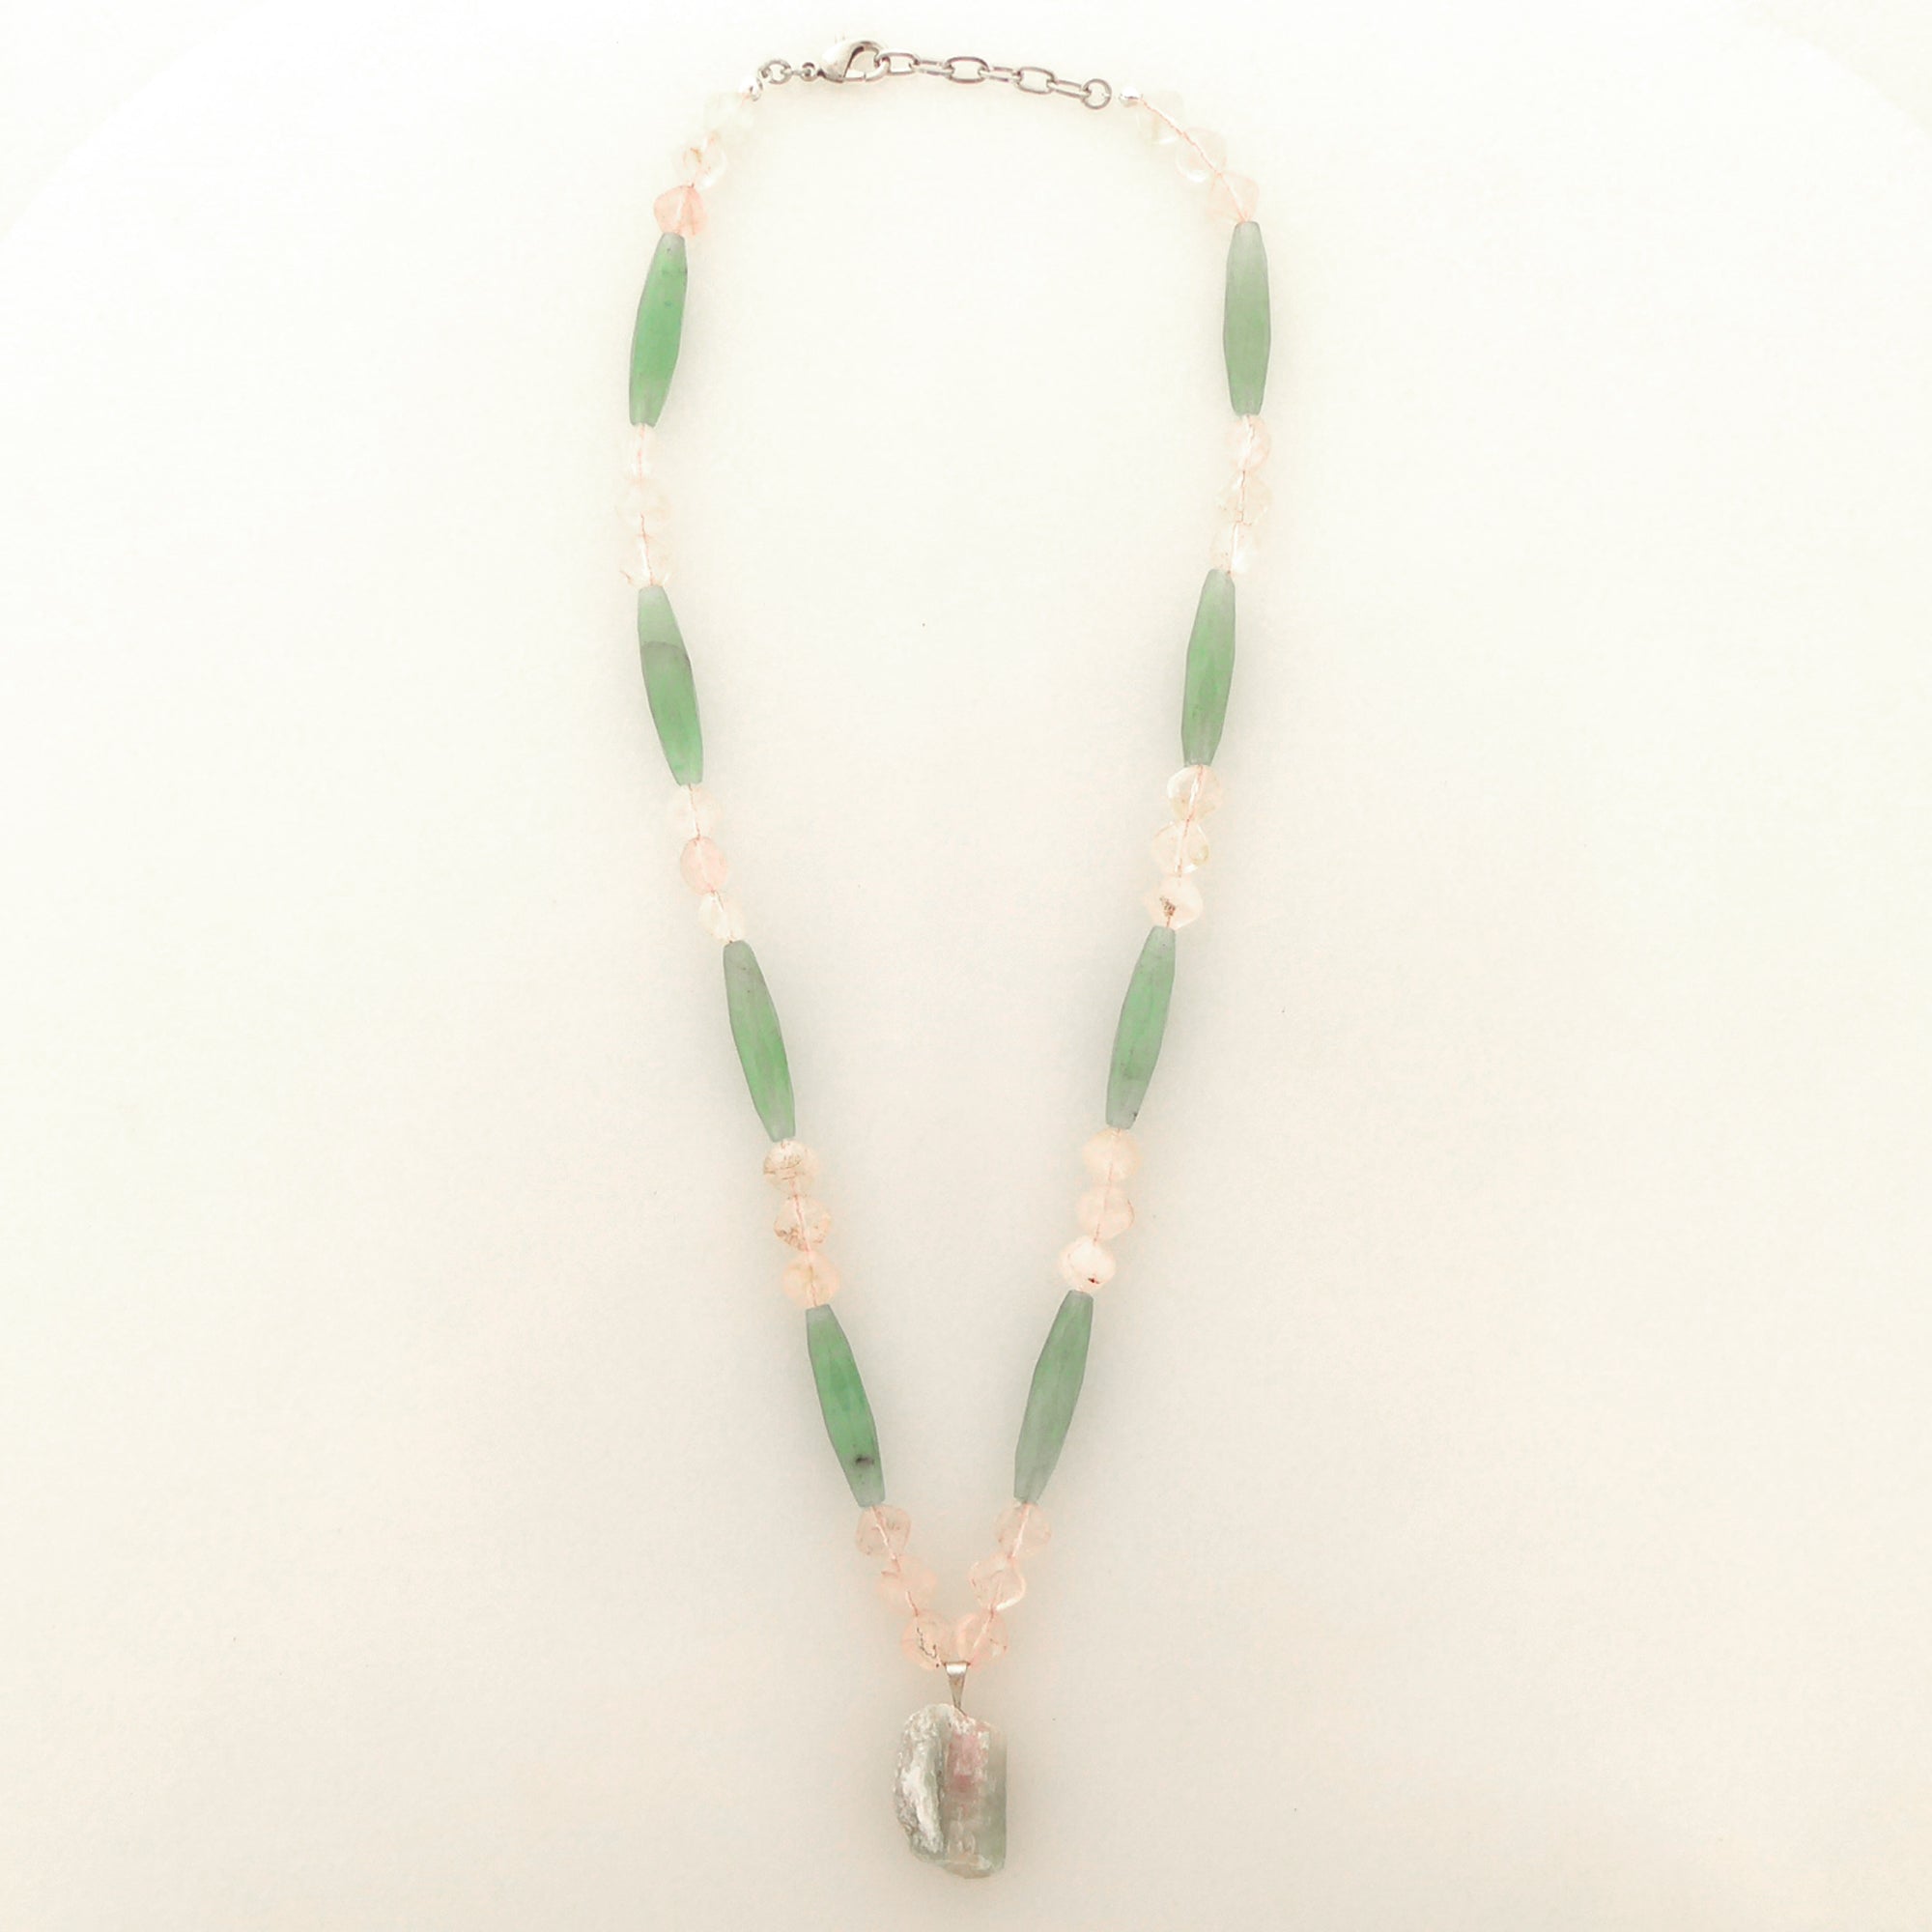 Watermelon tourmaline rose quartz green aventurine necklace by Jenny Dayco 4